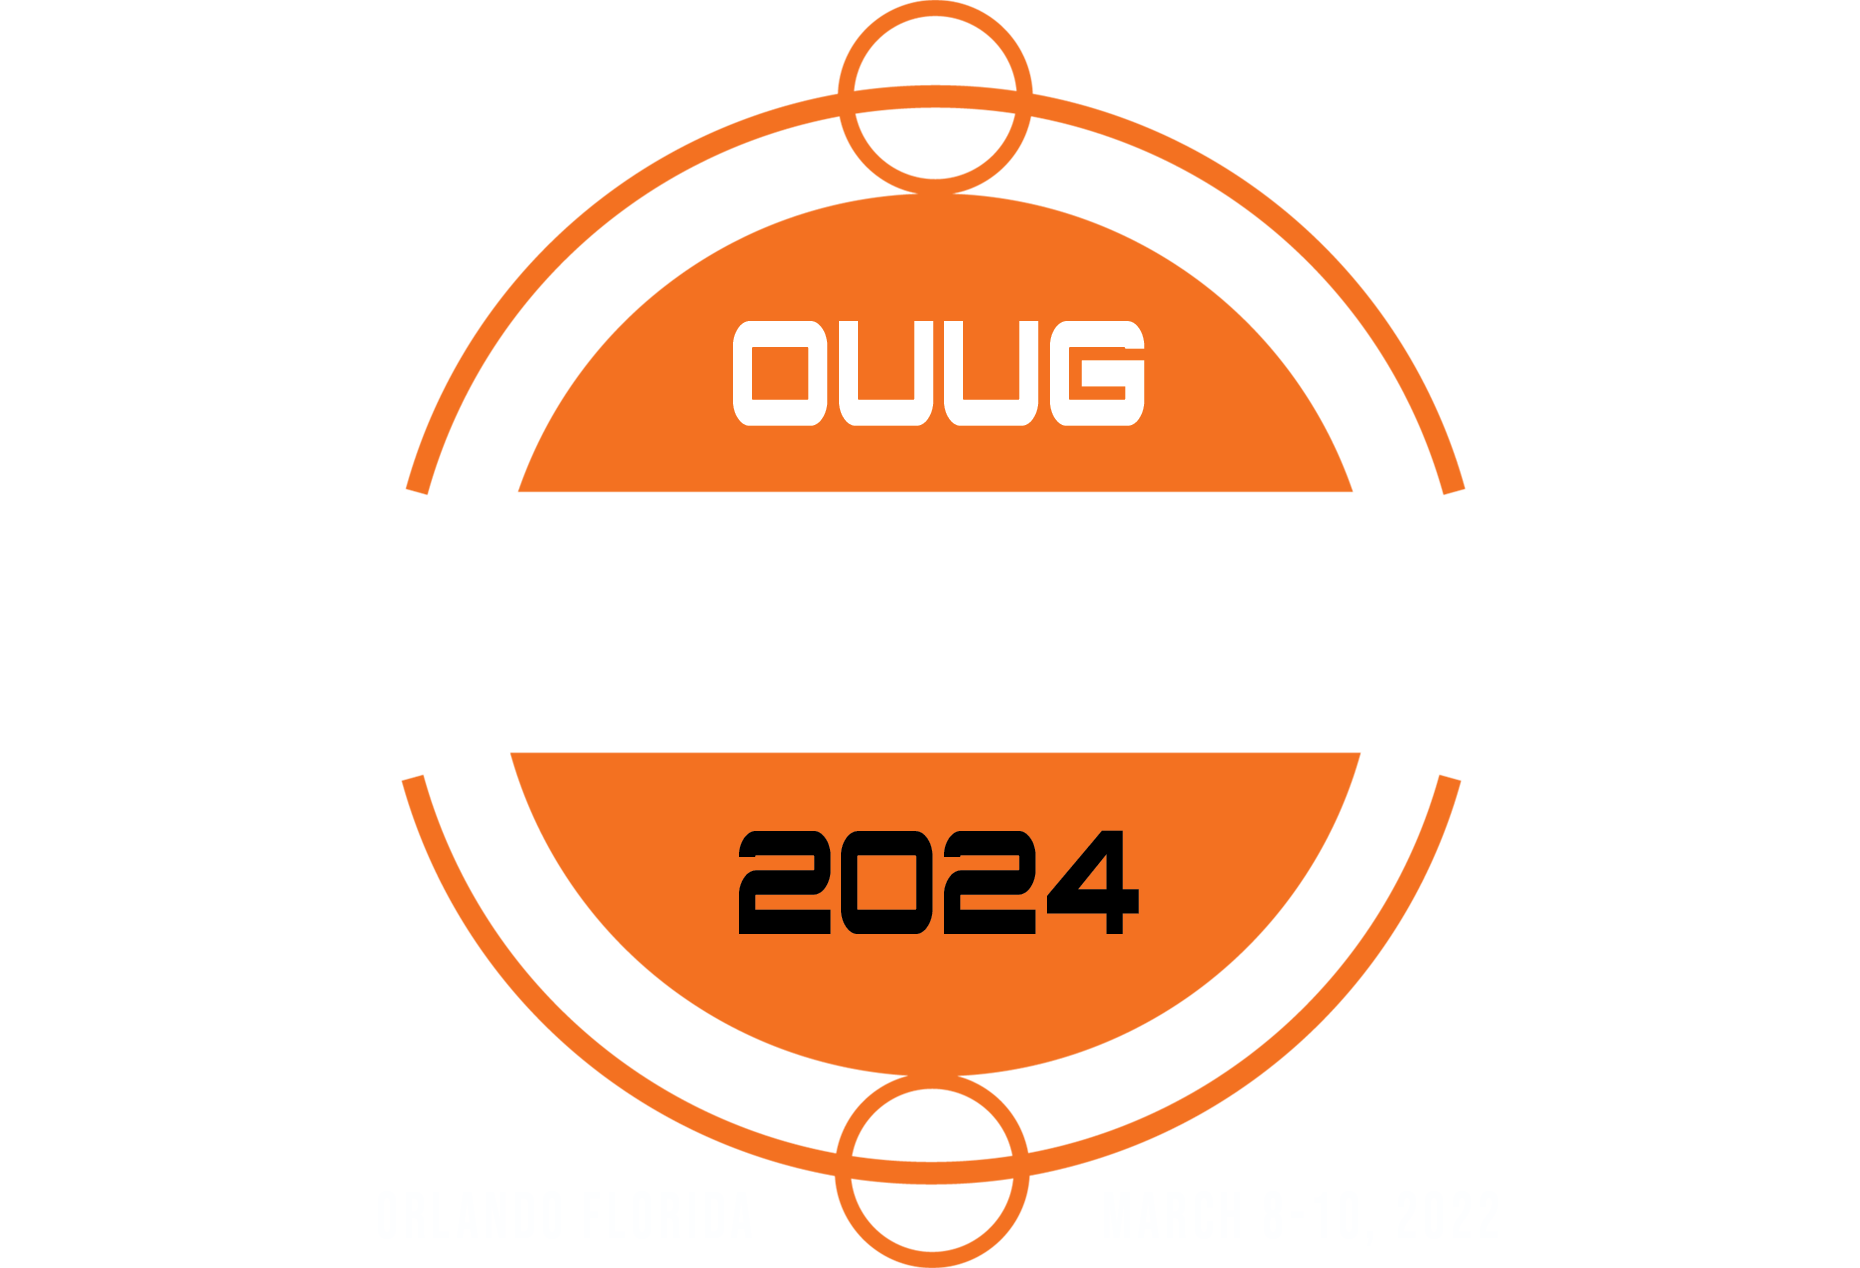 OUUG 2024